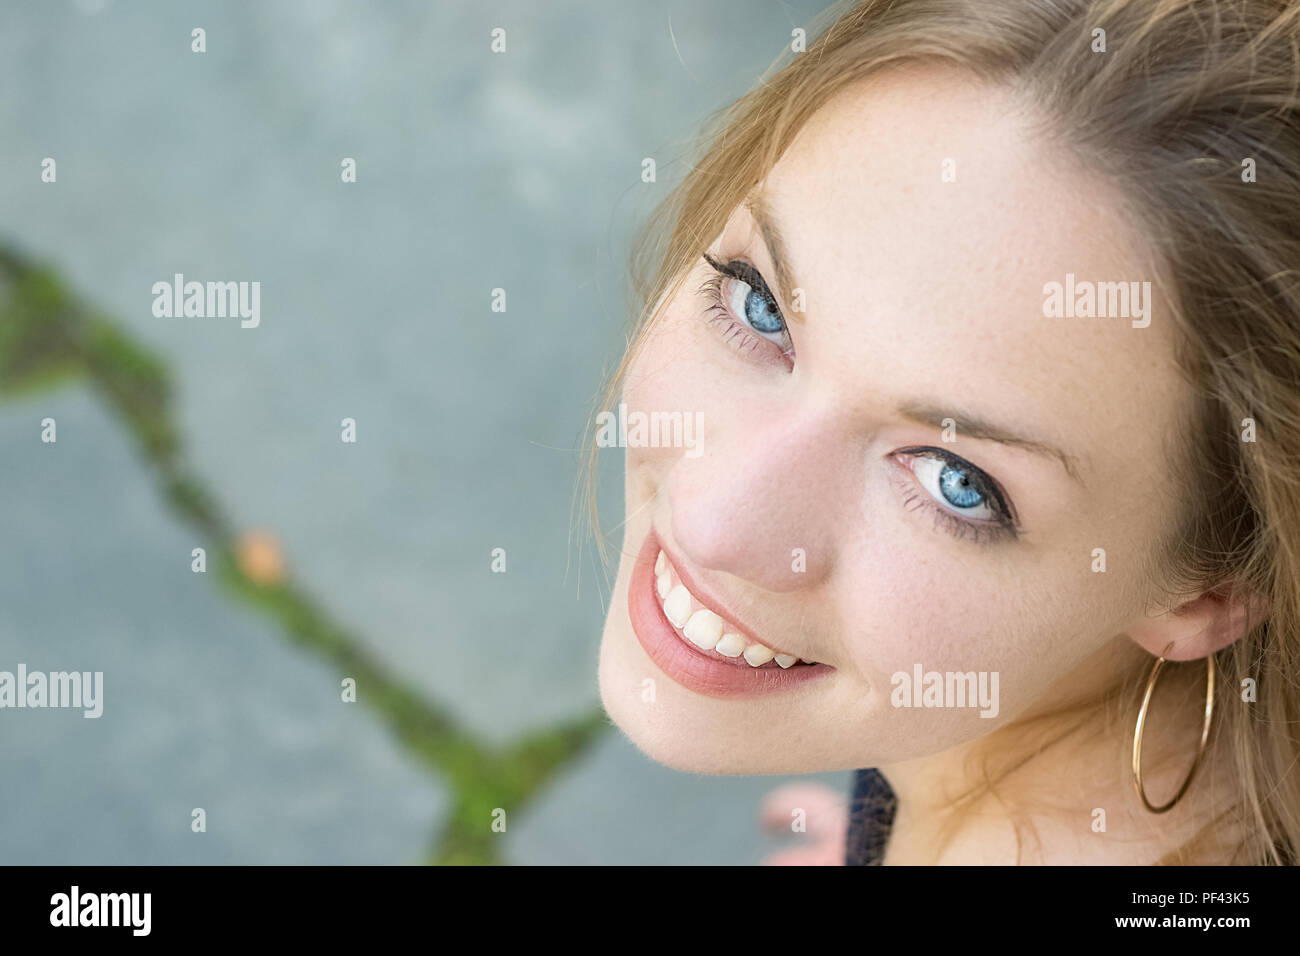 Portrait d'une jeune femme blonde aux yeux bleus à pleines dents, sourire, des dents en bonne santé. Banque D'Images